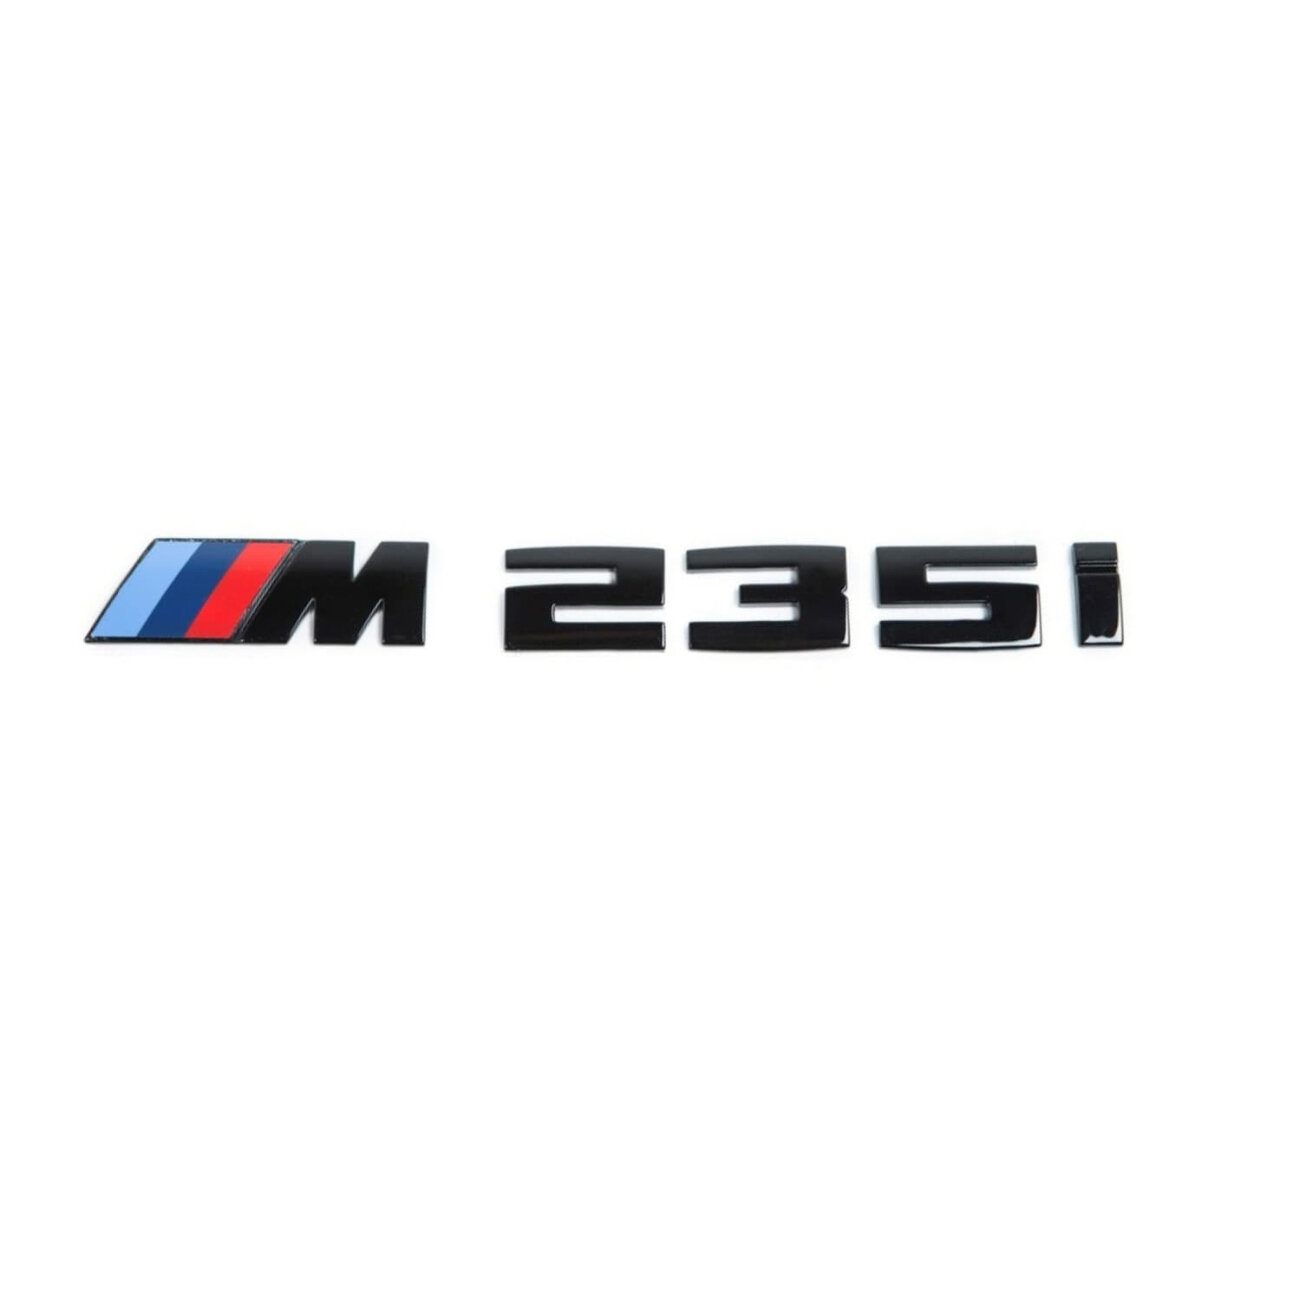 Шильдик на багажник M235i для BMW 2-ой серии черный глянец